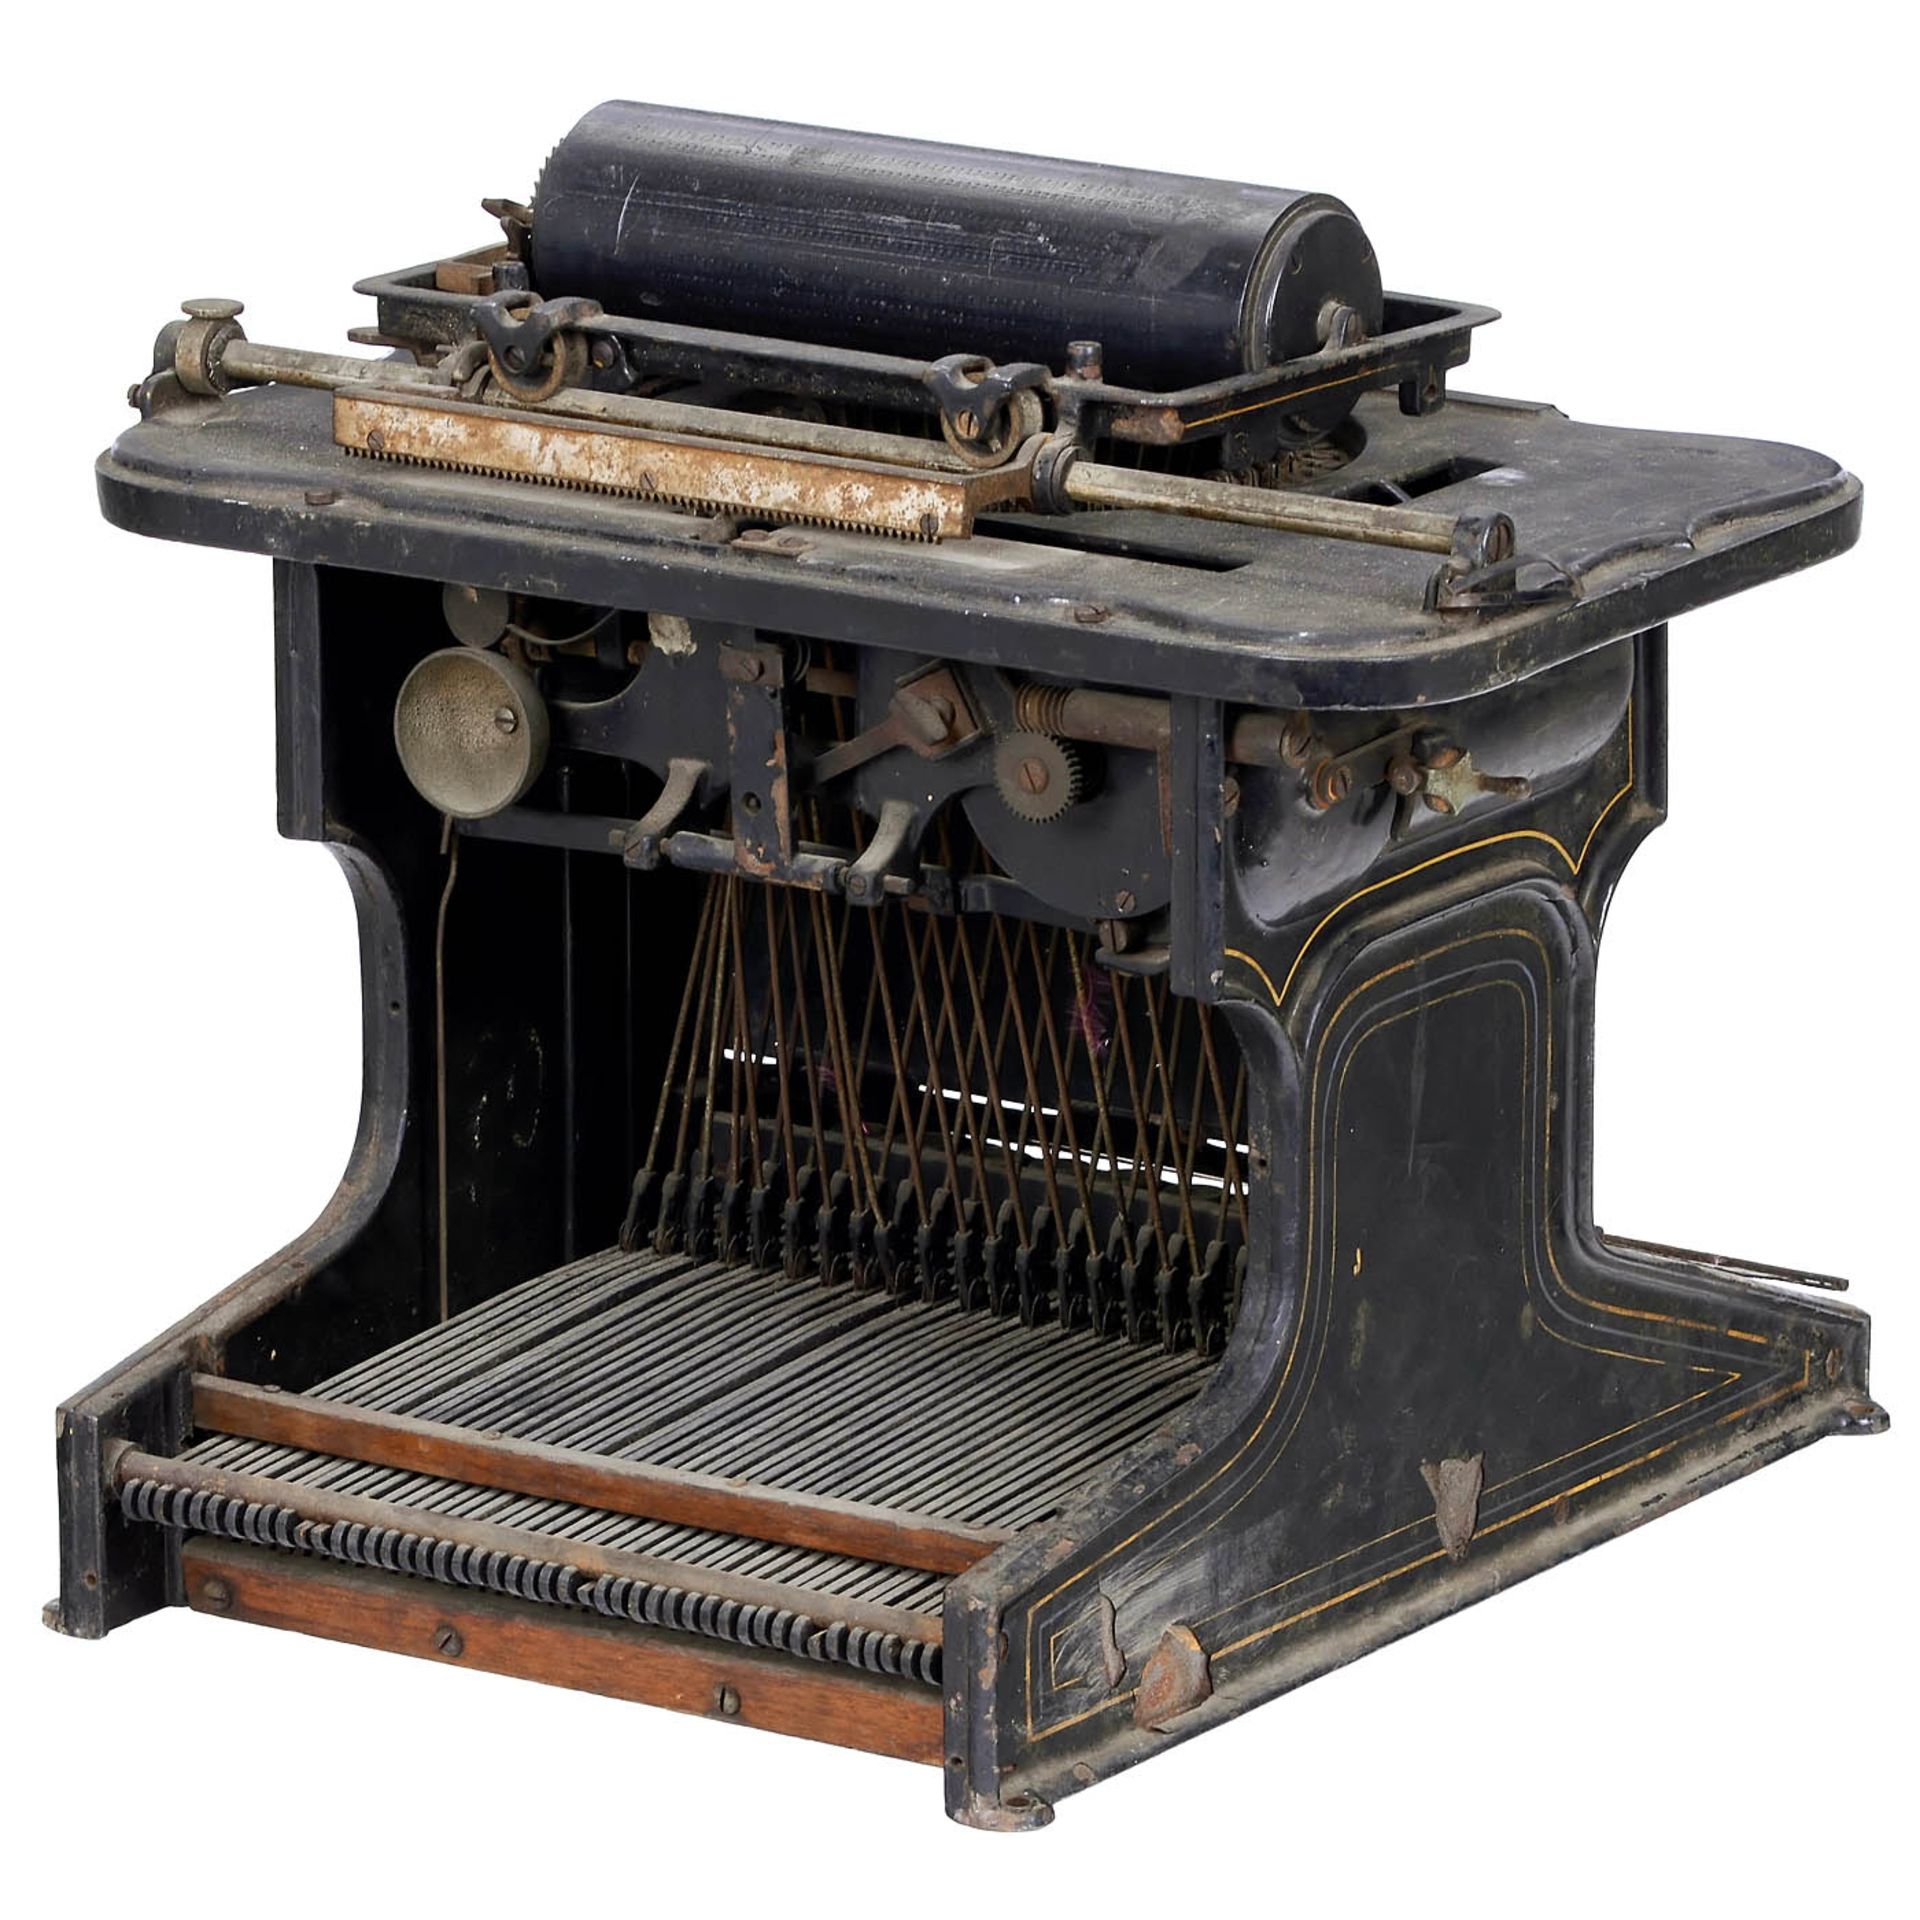 Sholes & Glidden Typewriter (Black), c. 1876 - Bild 3 aus 3